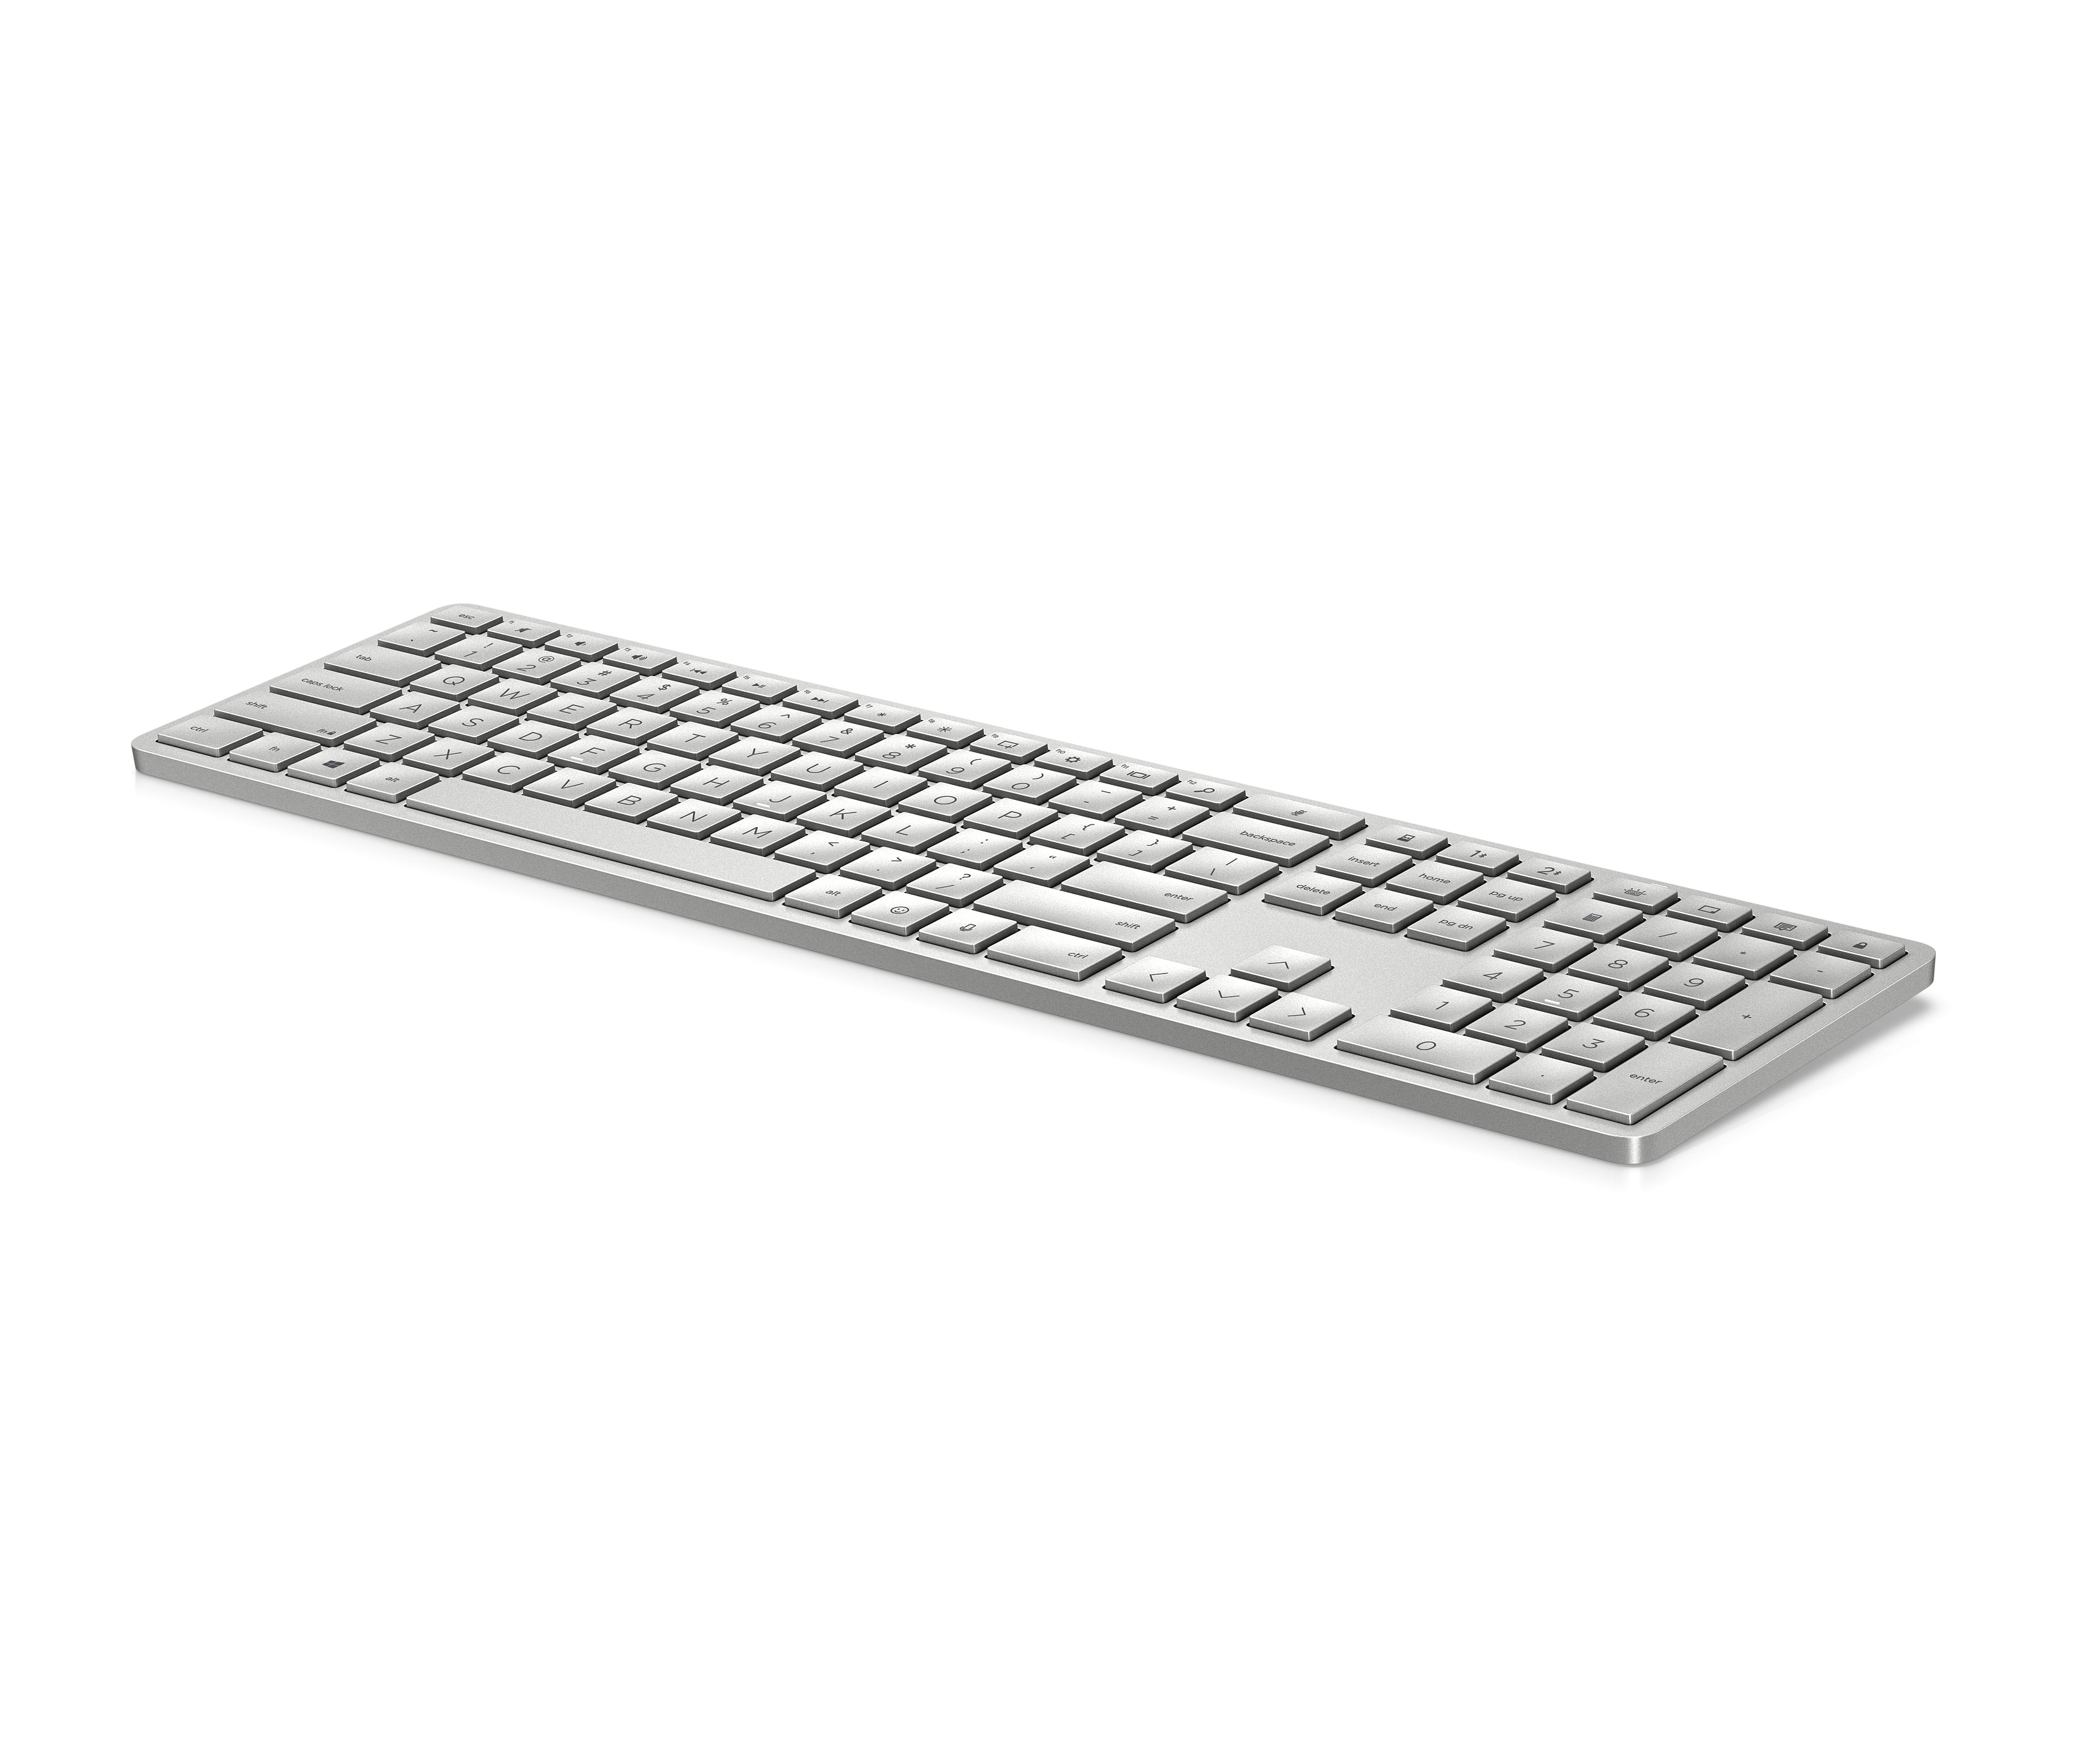 HP 970 Programmable Wireless Keyboard - Good Design